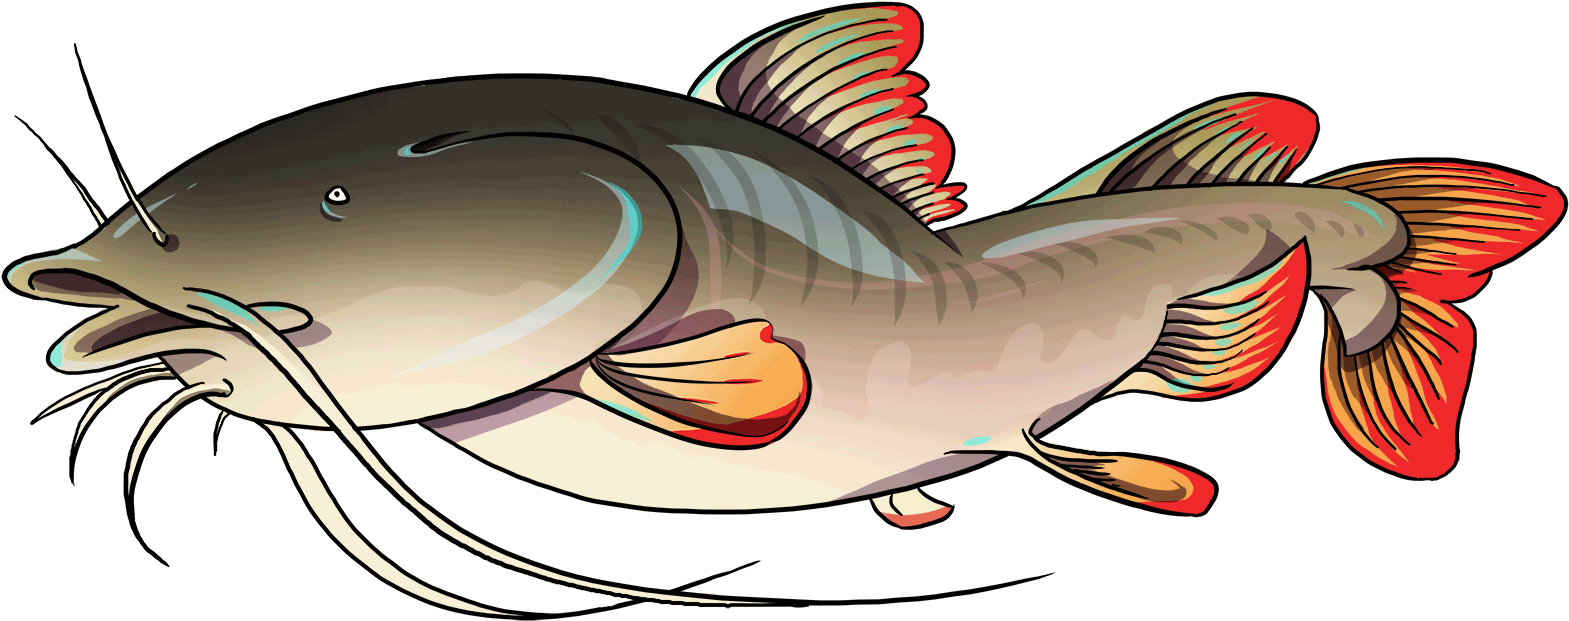 Asian-catfish - Catfish (1650x975)